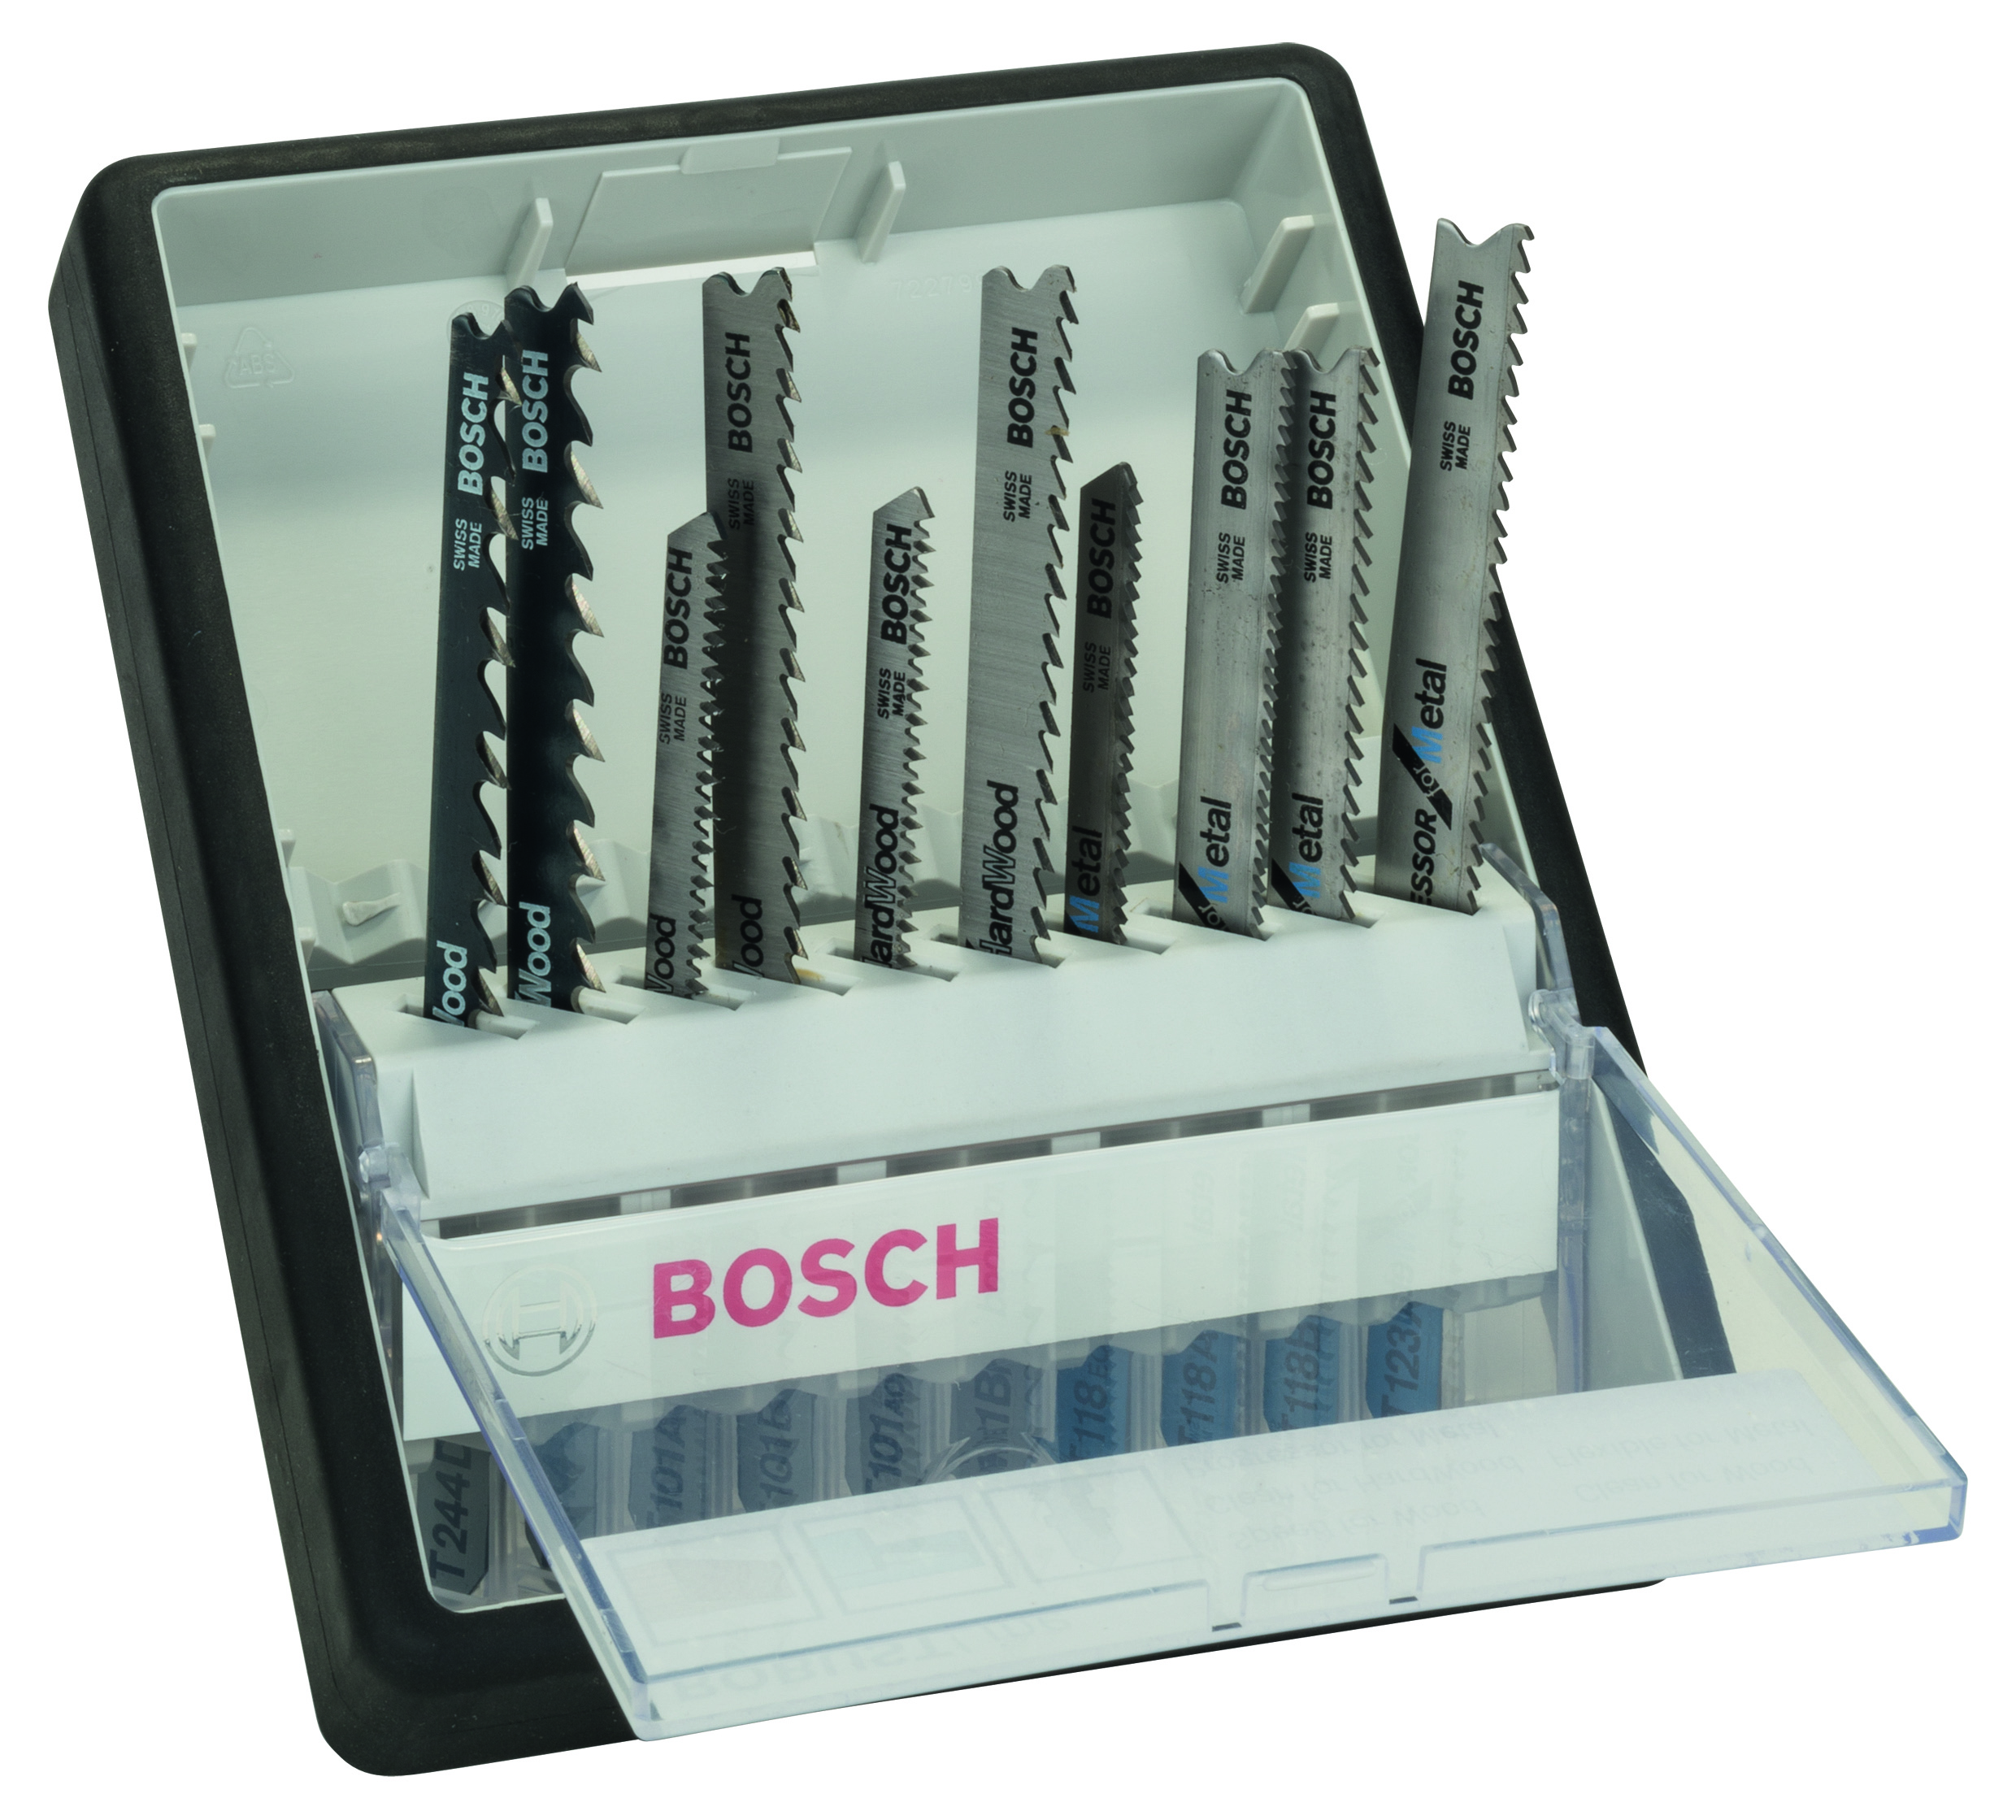 Bosch Robust Jigsaw Blade Set for Wood & Metal (10pcs)